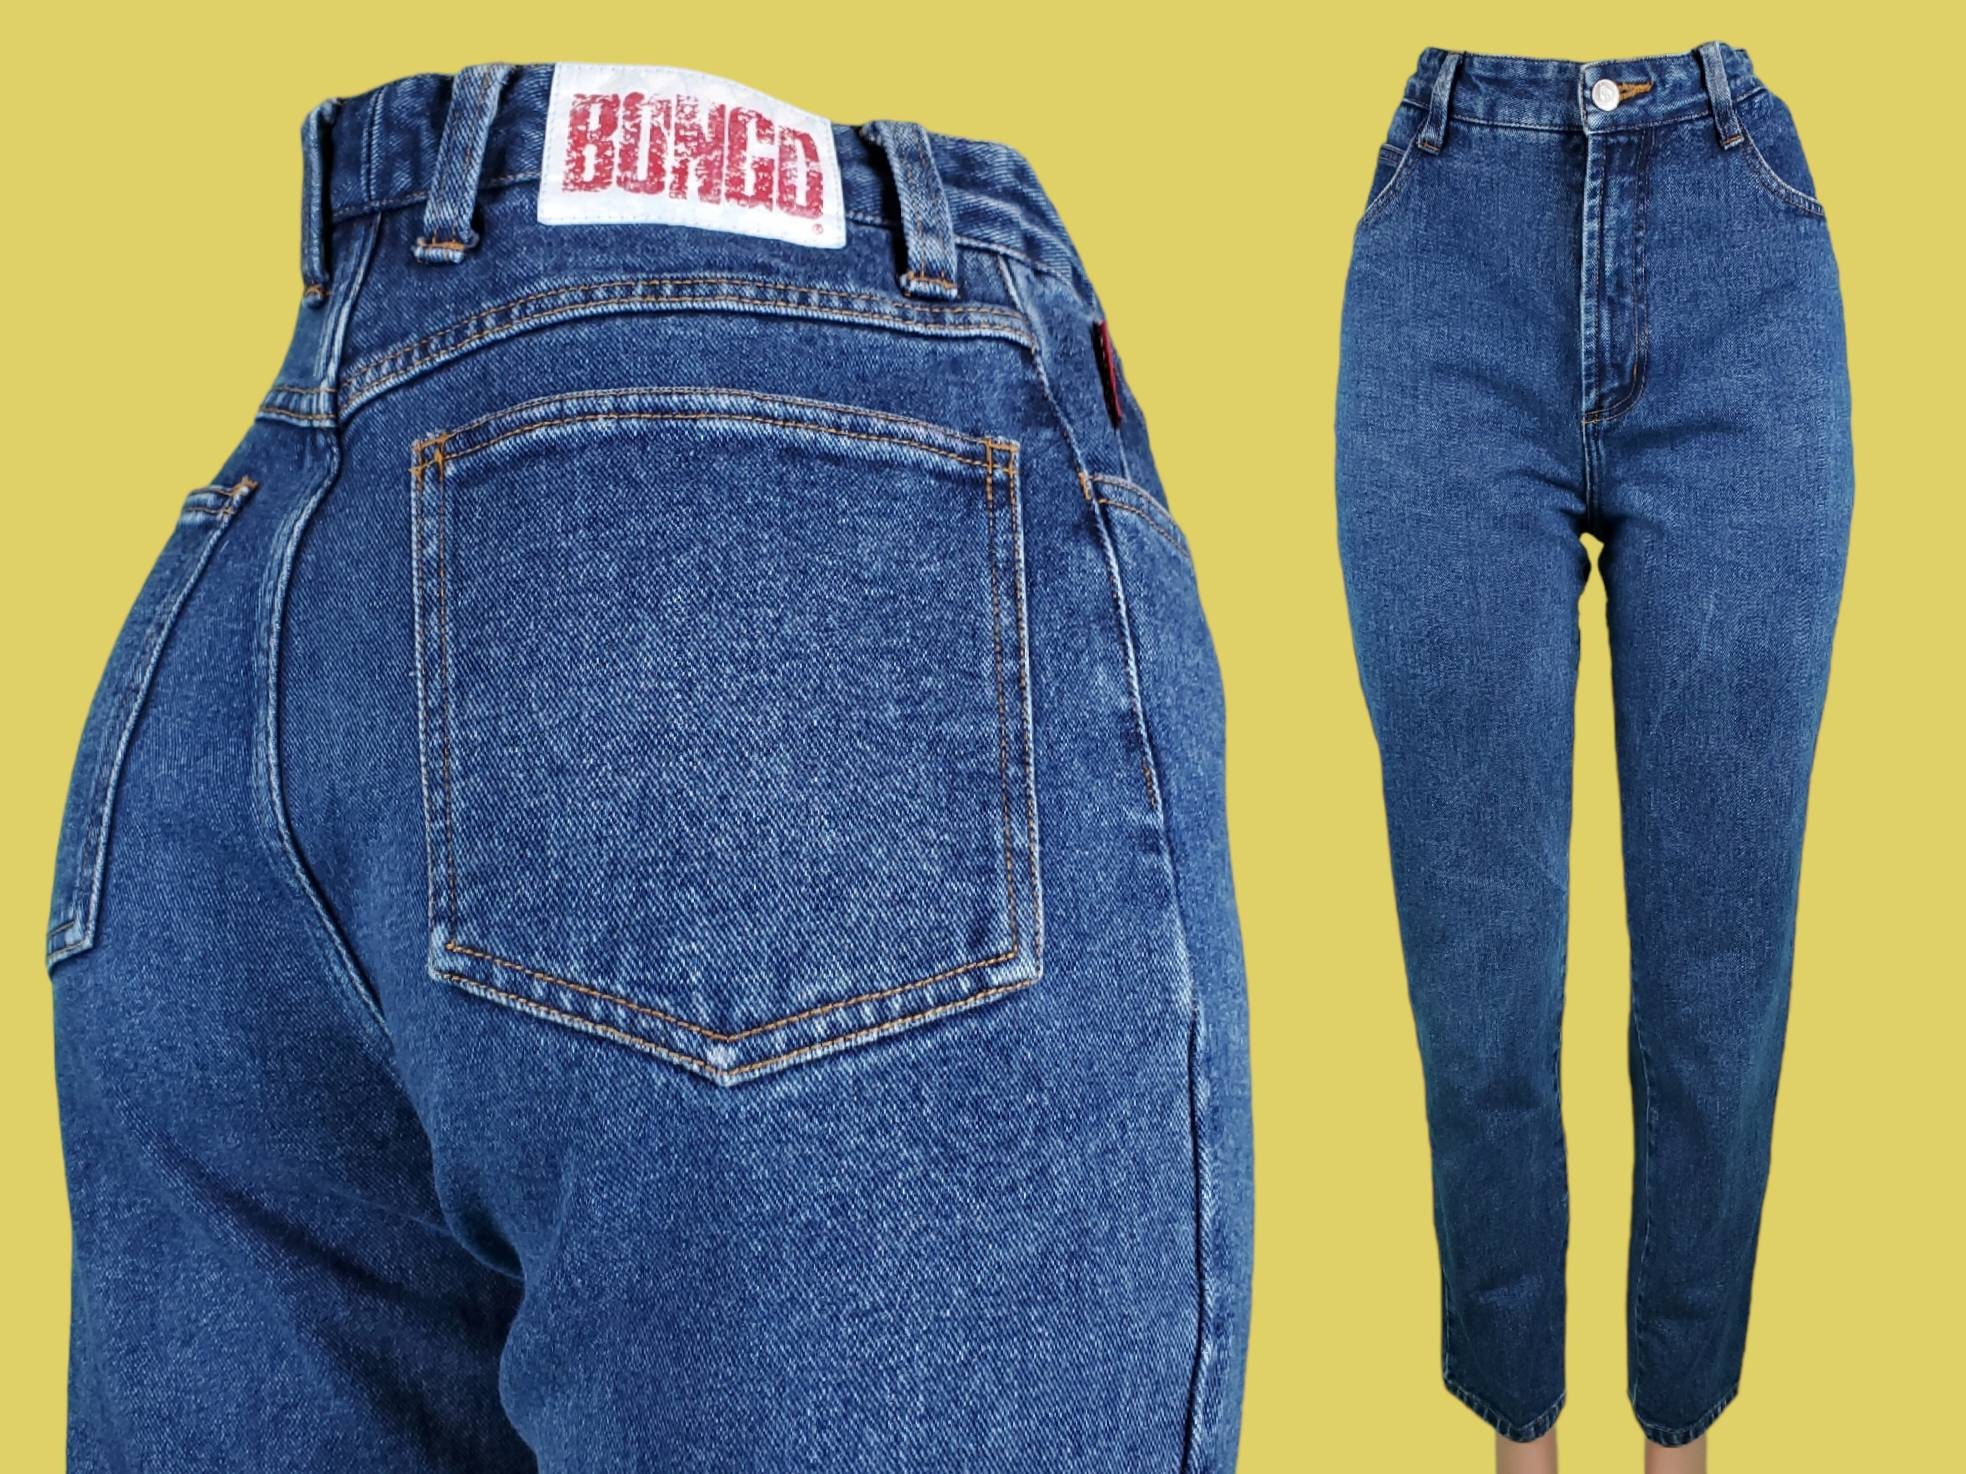 Bongo jeans